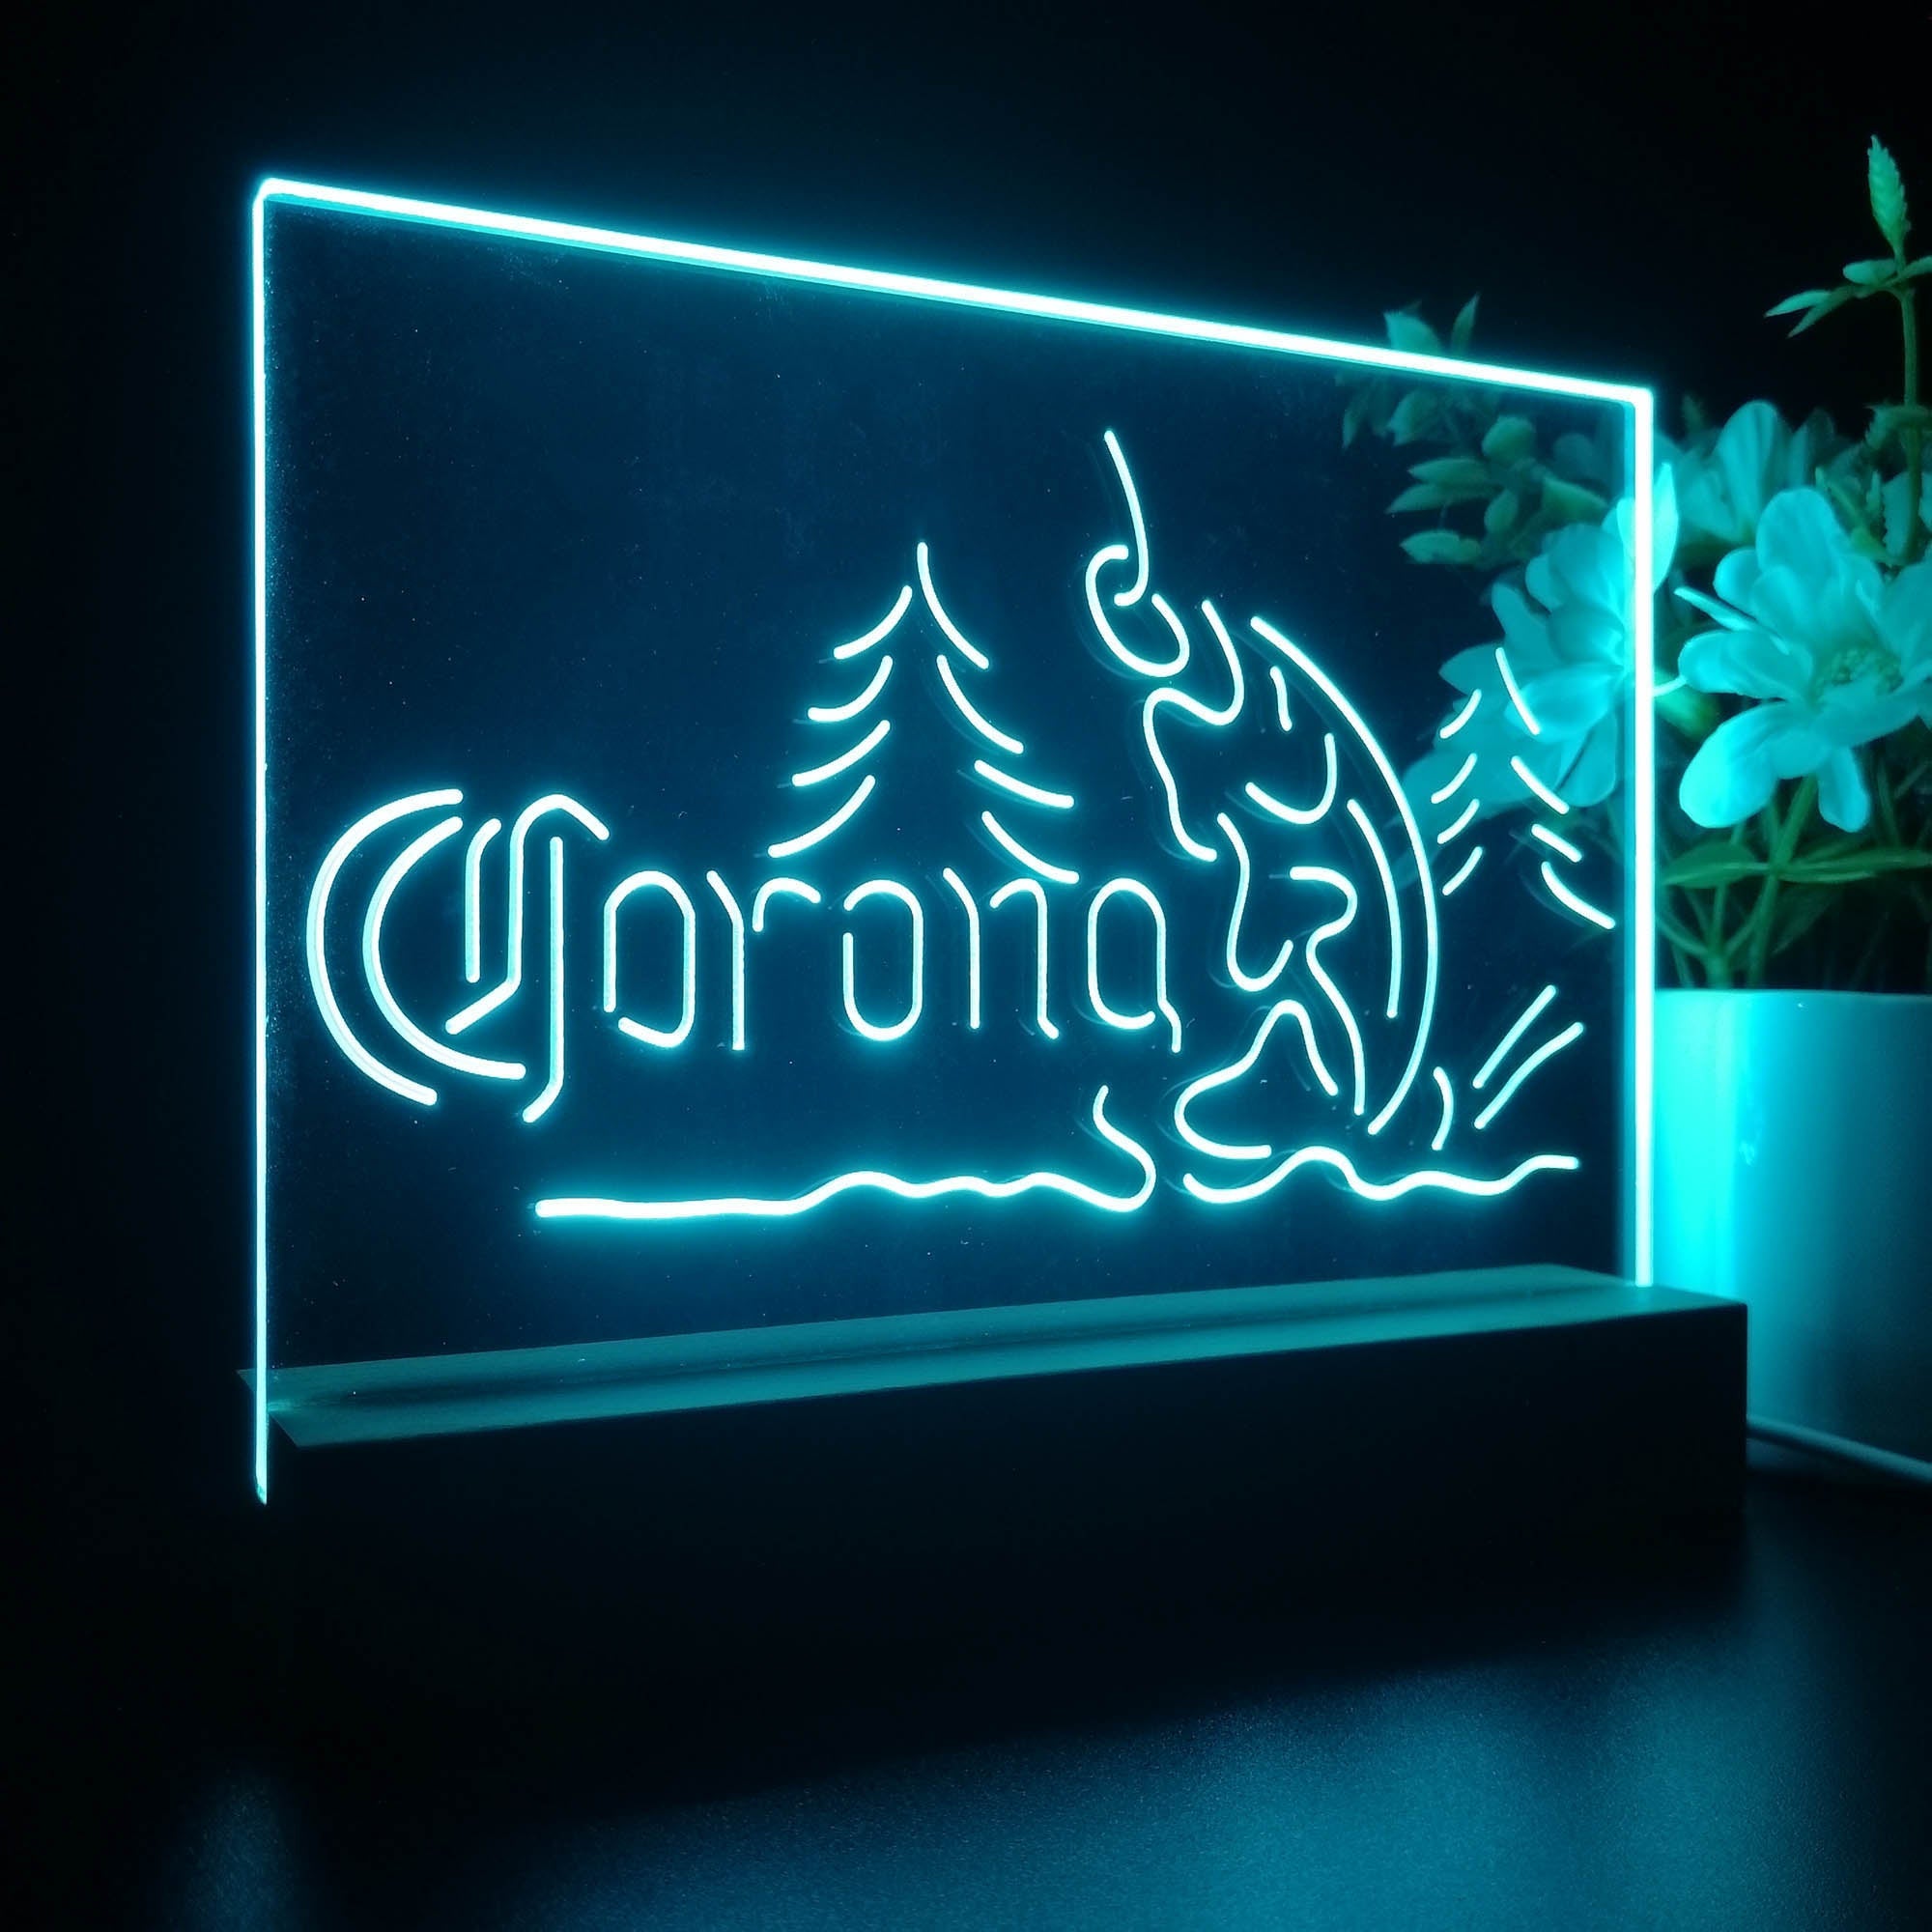 Corona Fishing Cabin House Neon Sign Pub Bar Lamp